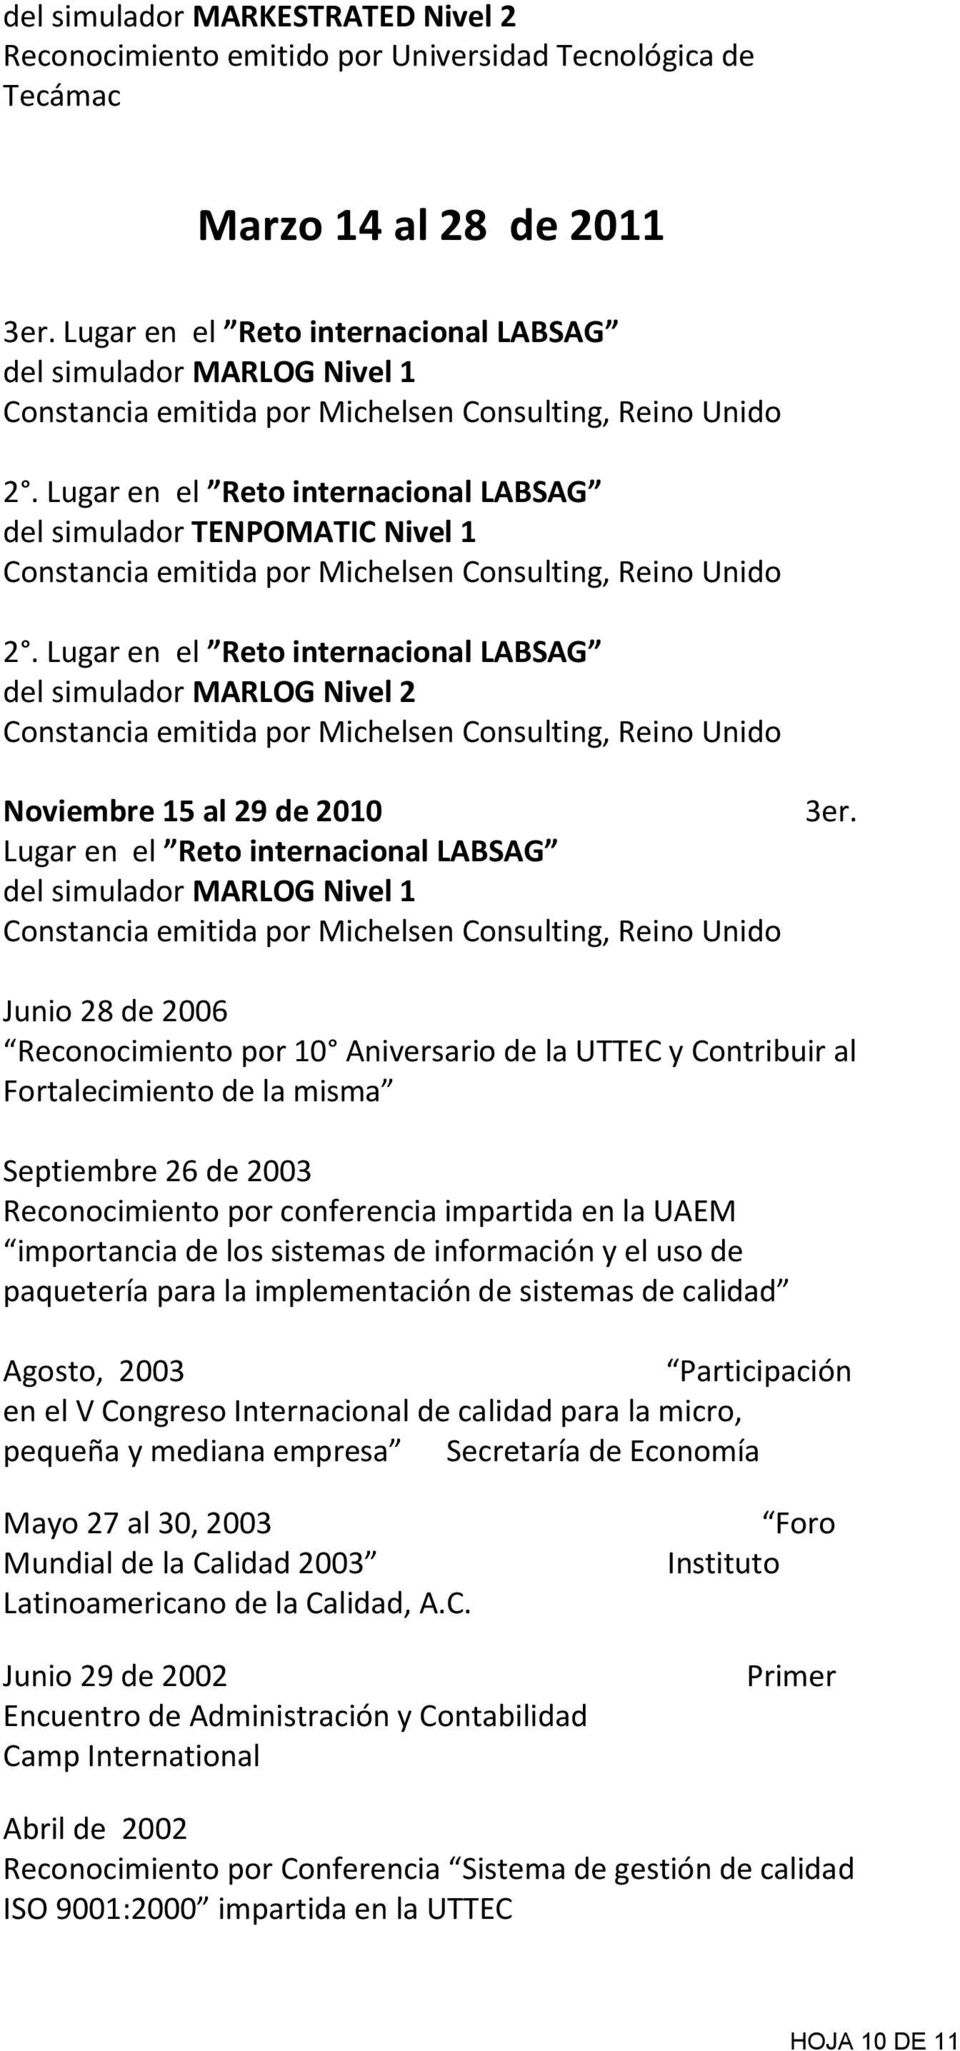 Junio 28 de 2006 Reconocimiento por 10 Aniversario de la UTTEC y Contribuir al Fortalecimiento de la misma Septiembre 26 de 2003 Reconocimiento por conferencia impartida en la UAEM importancia de los